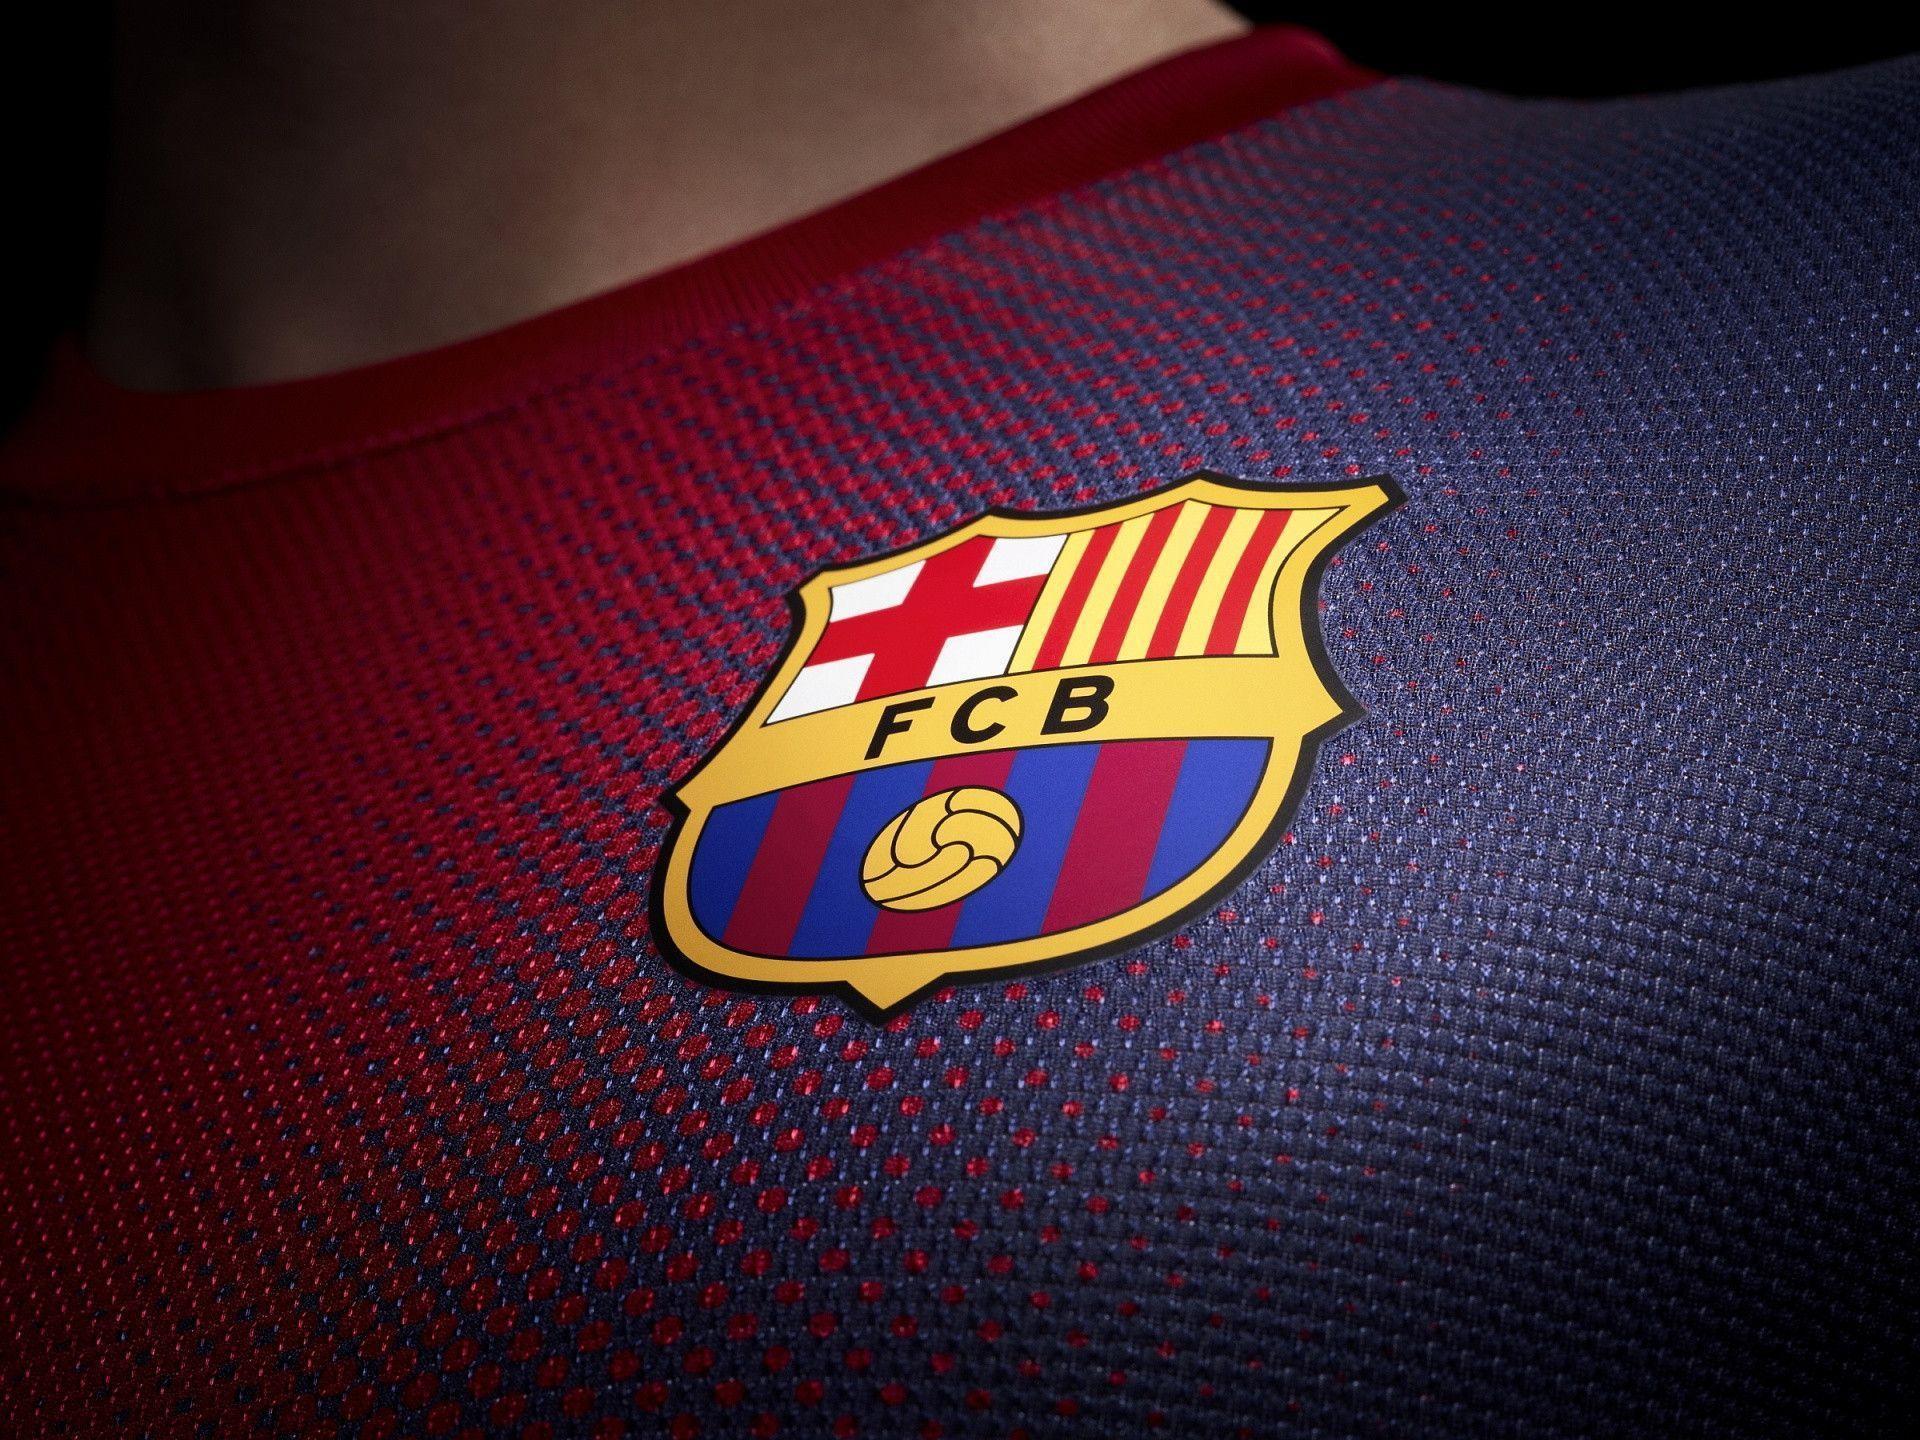 Logo Barcelona fan Barca: Nếu bạn là fan hâm mộ của Barca, thì logo độc đáo của đội bóng đầy sức hút sẽ là một trong những lựa chọn hoàn hảo để thể hiện niềm tự hào và tình yêu dành cho đội bóng. Hãy xem ngay nếu bạn muốn sở hữu một logo độc đáo!